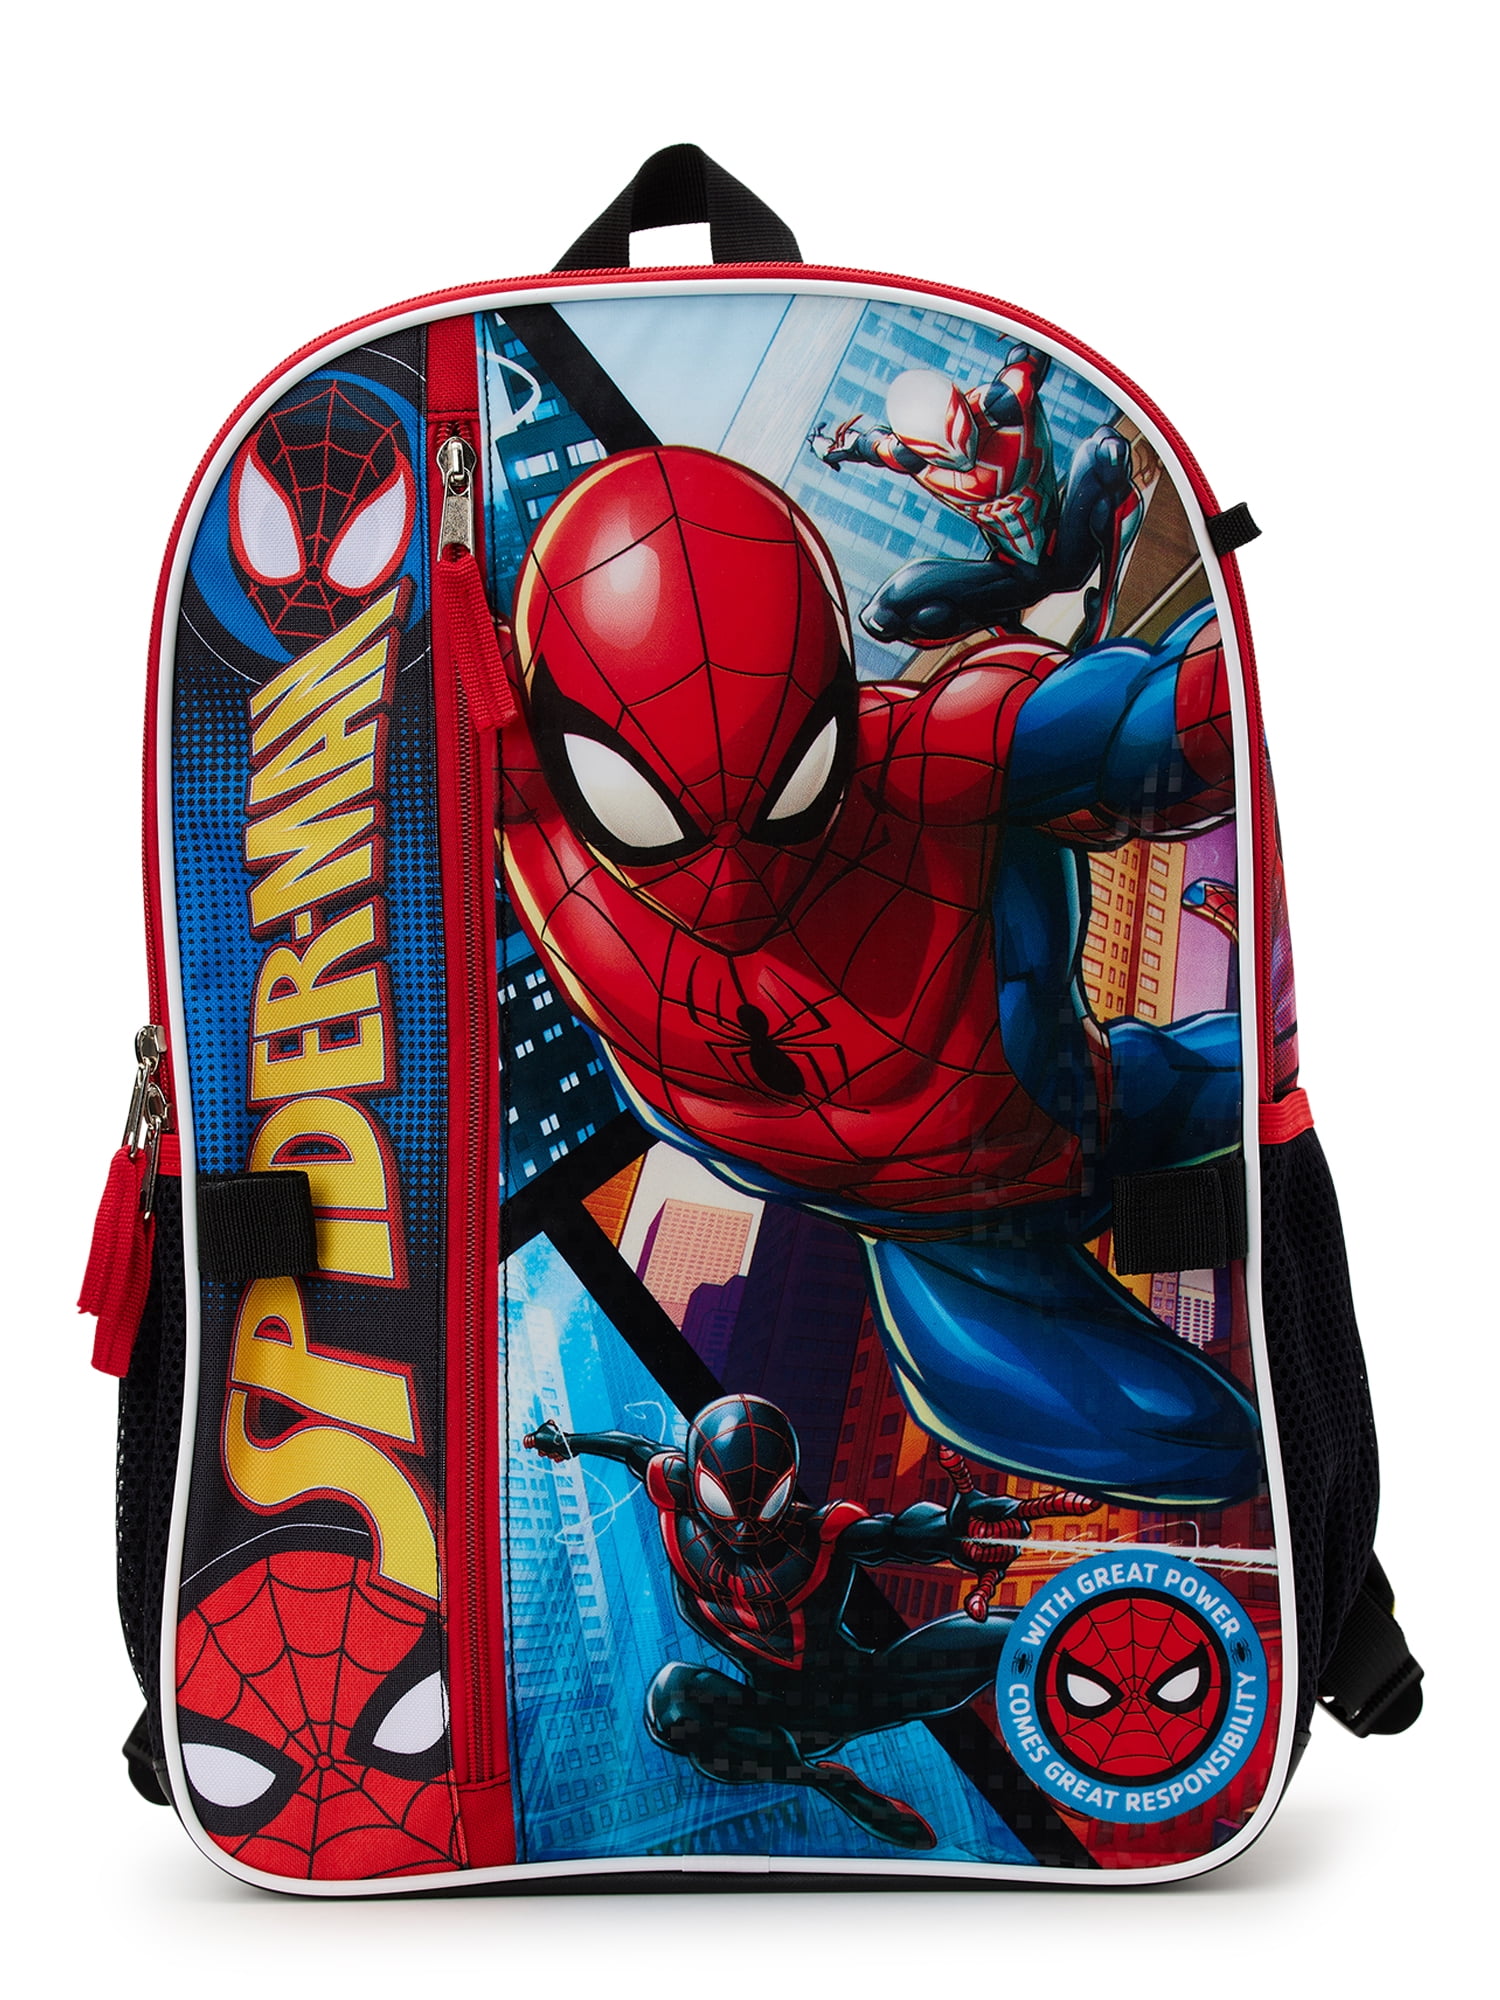 Marvel Spider-Man Backpack with 3D Embossed Design by Marvel (MAR084)